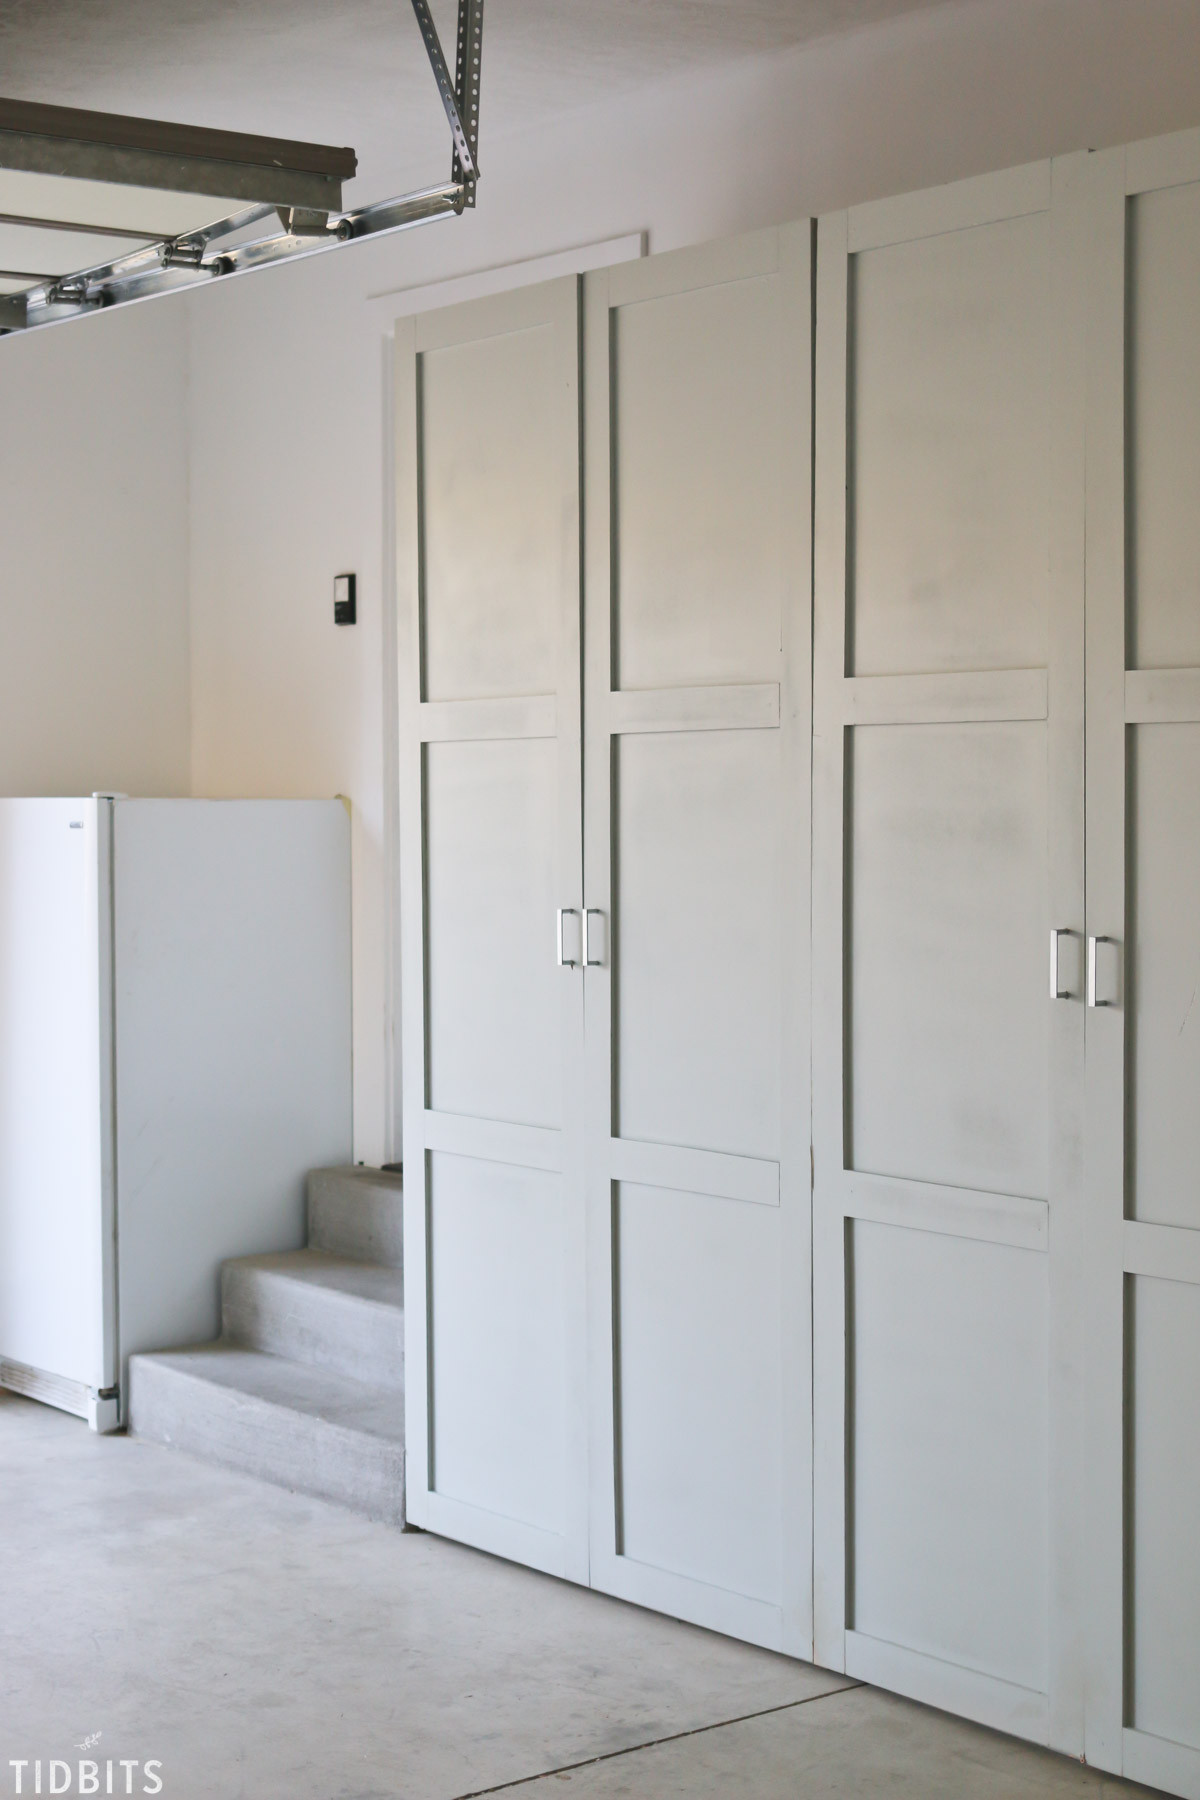 Best ideas about Garage Storage Cabinet Plan
. Save or Pin Garage Storage Cabinets Now.